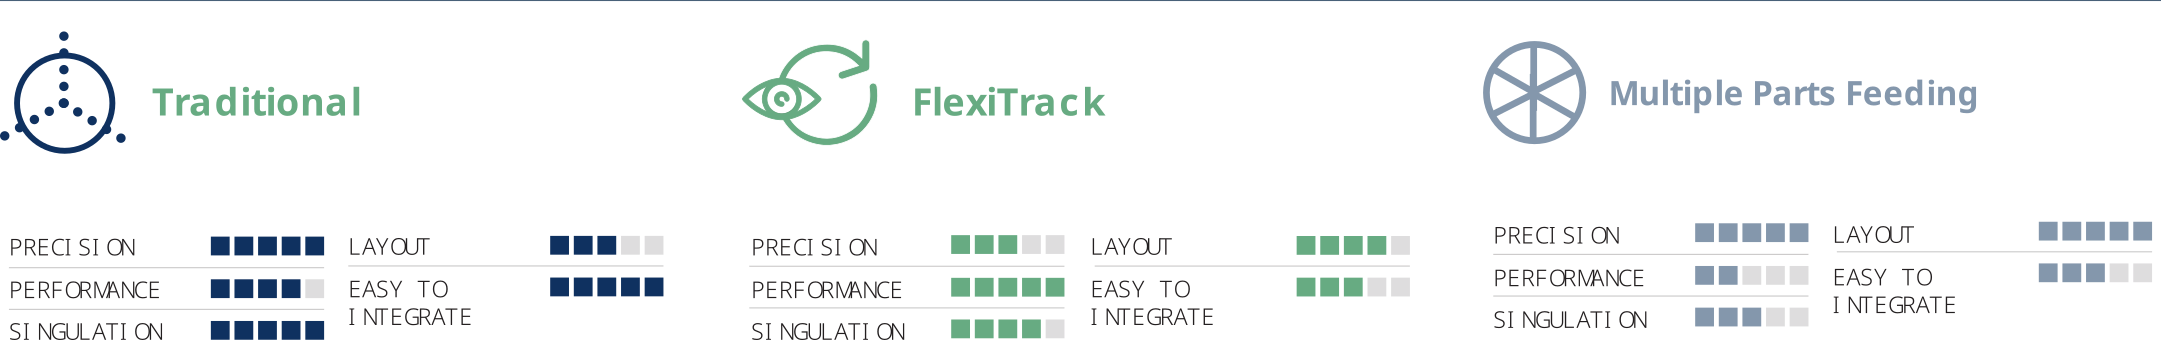 FLEXIBOWL | TRADITIONAL - FLEXITRACK - MULTIPLE PARTS FEEDING | Alimentation traditionnelle de pièces - en mode tracking - en mode multi pièces